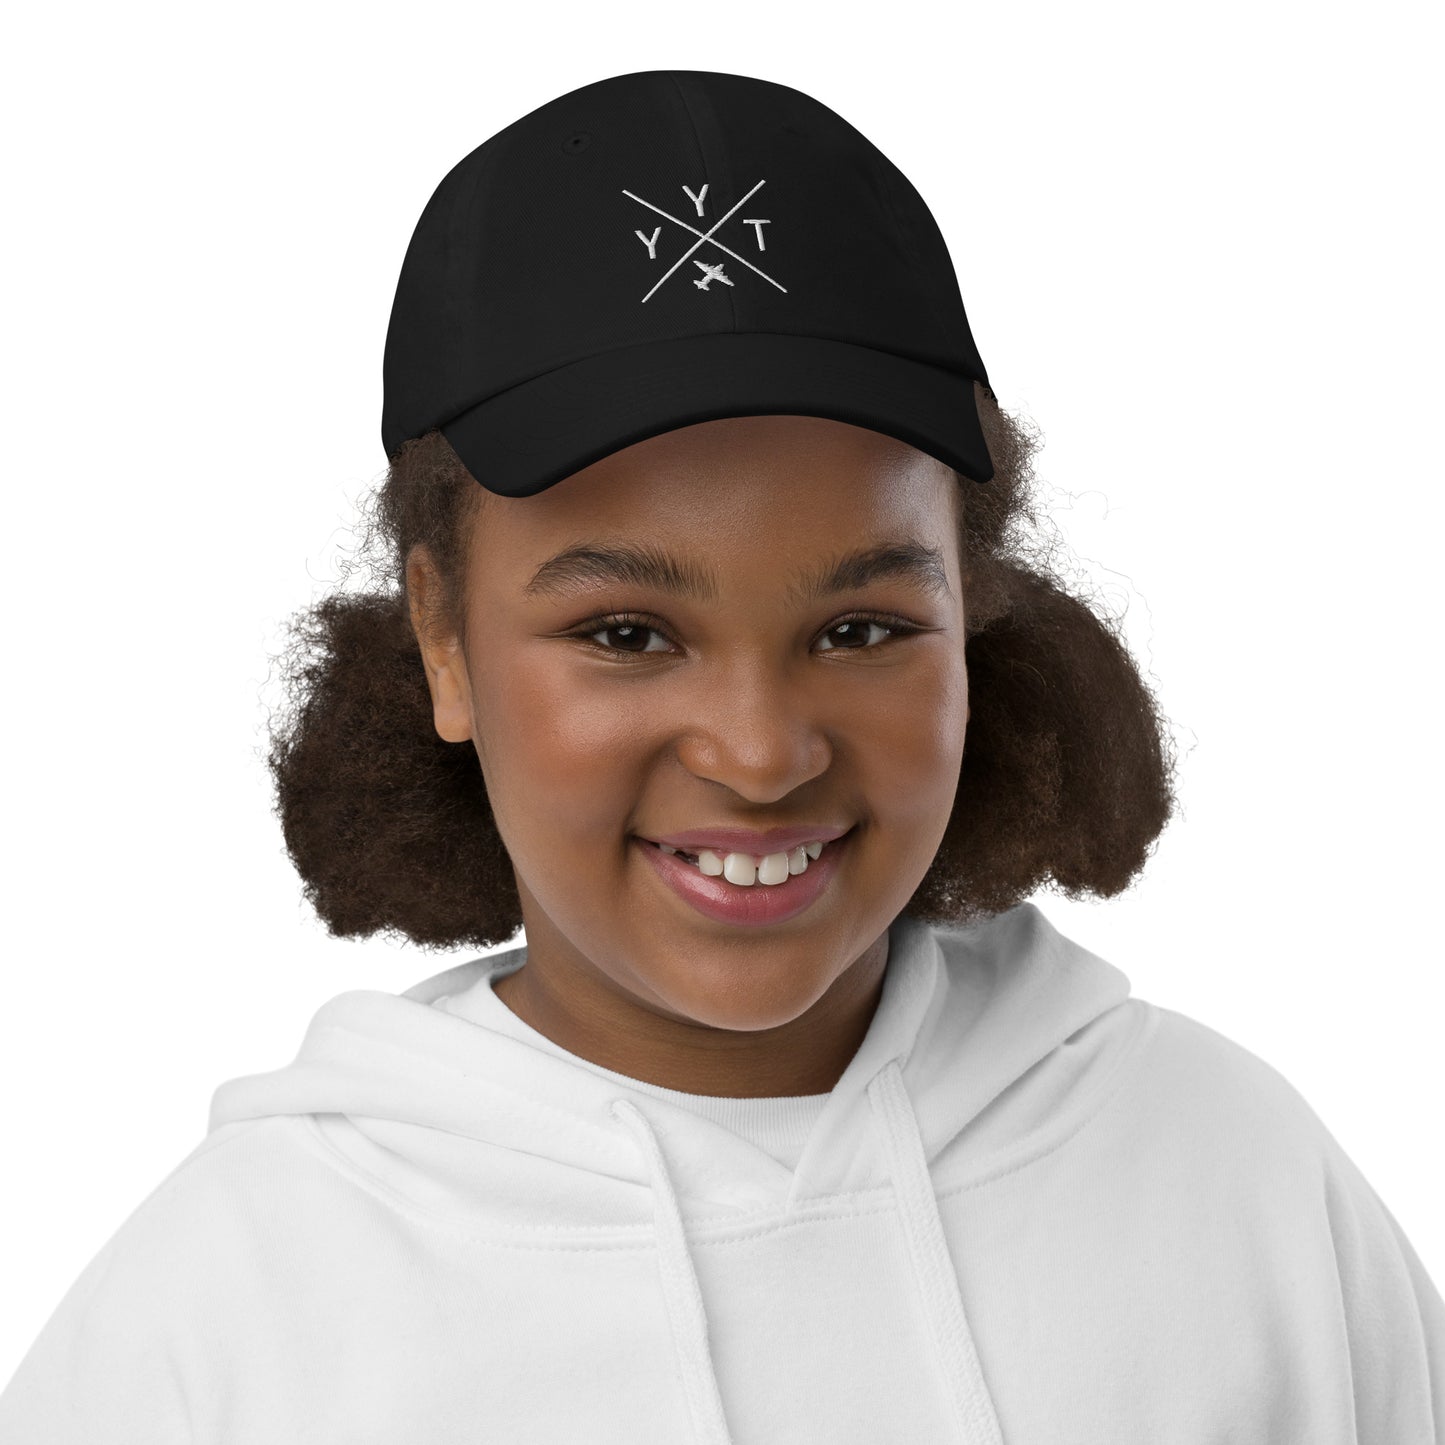 Crossed-X Kid's Baseball Cap - White • YYT St. John's • YHM Designs - Image 02